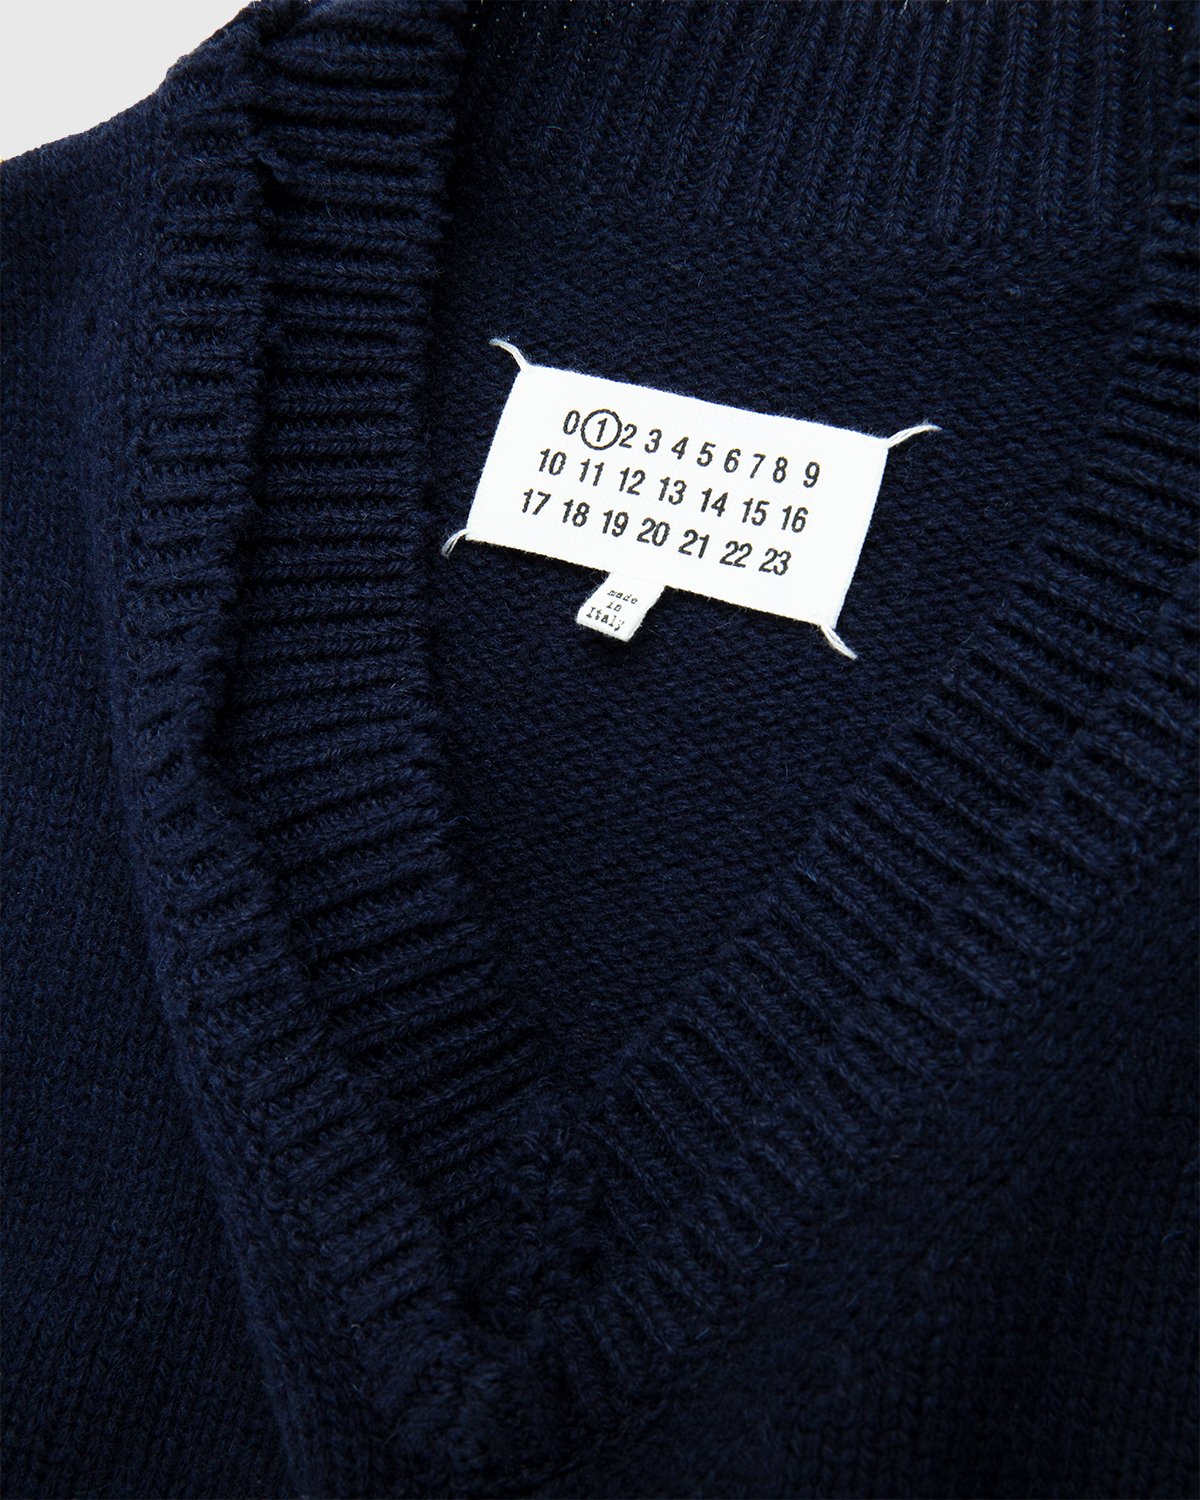 Maison Margiela - Sweater Navy - Clothing - Blue - Image 3